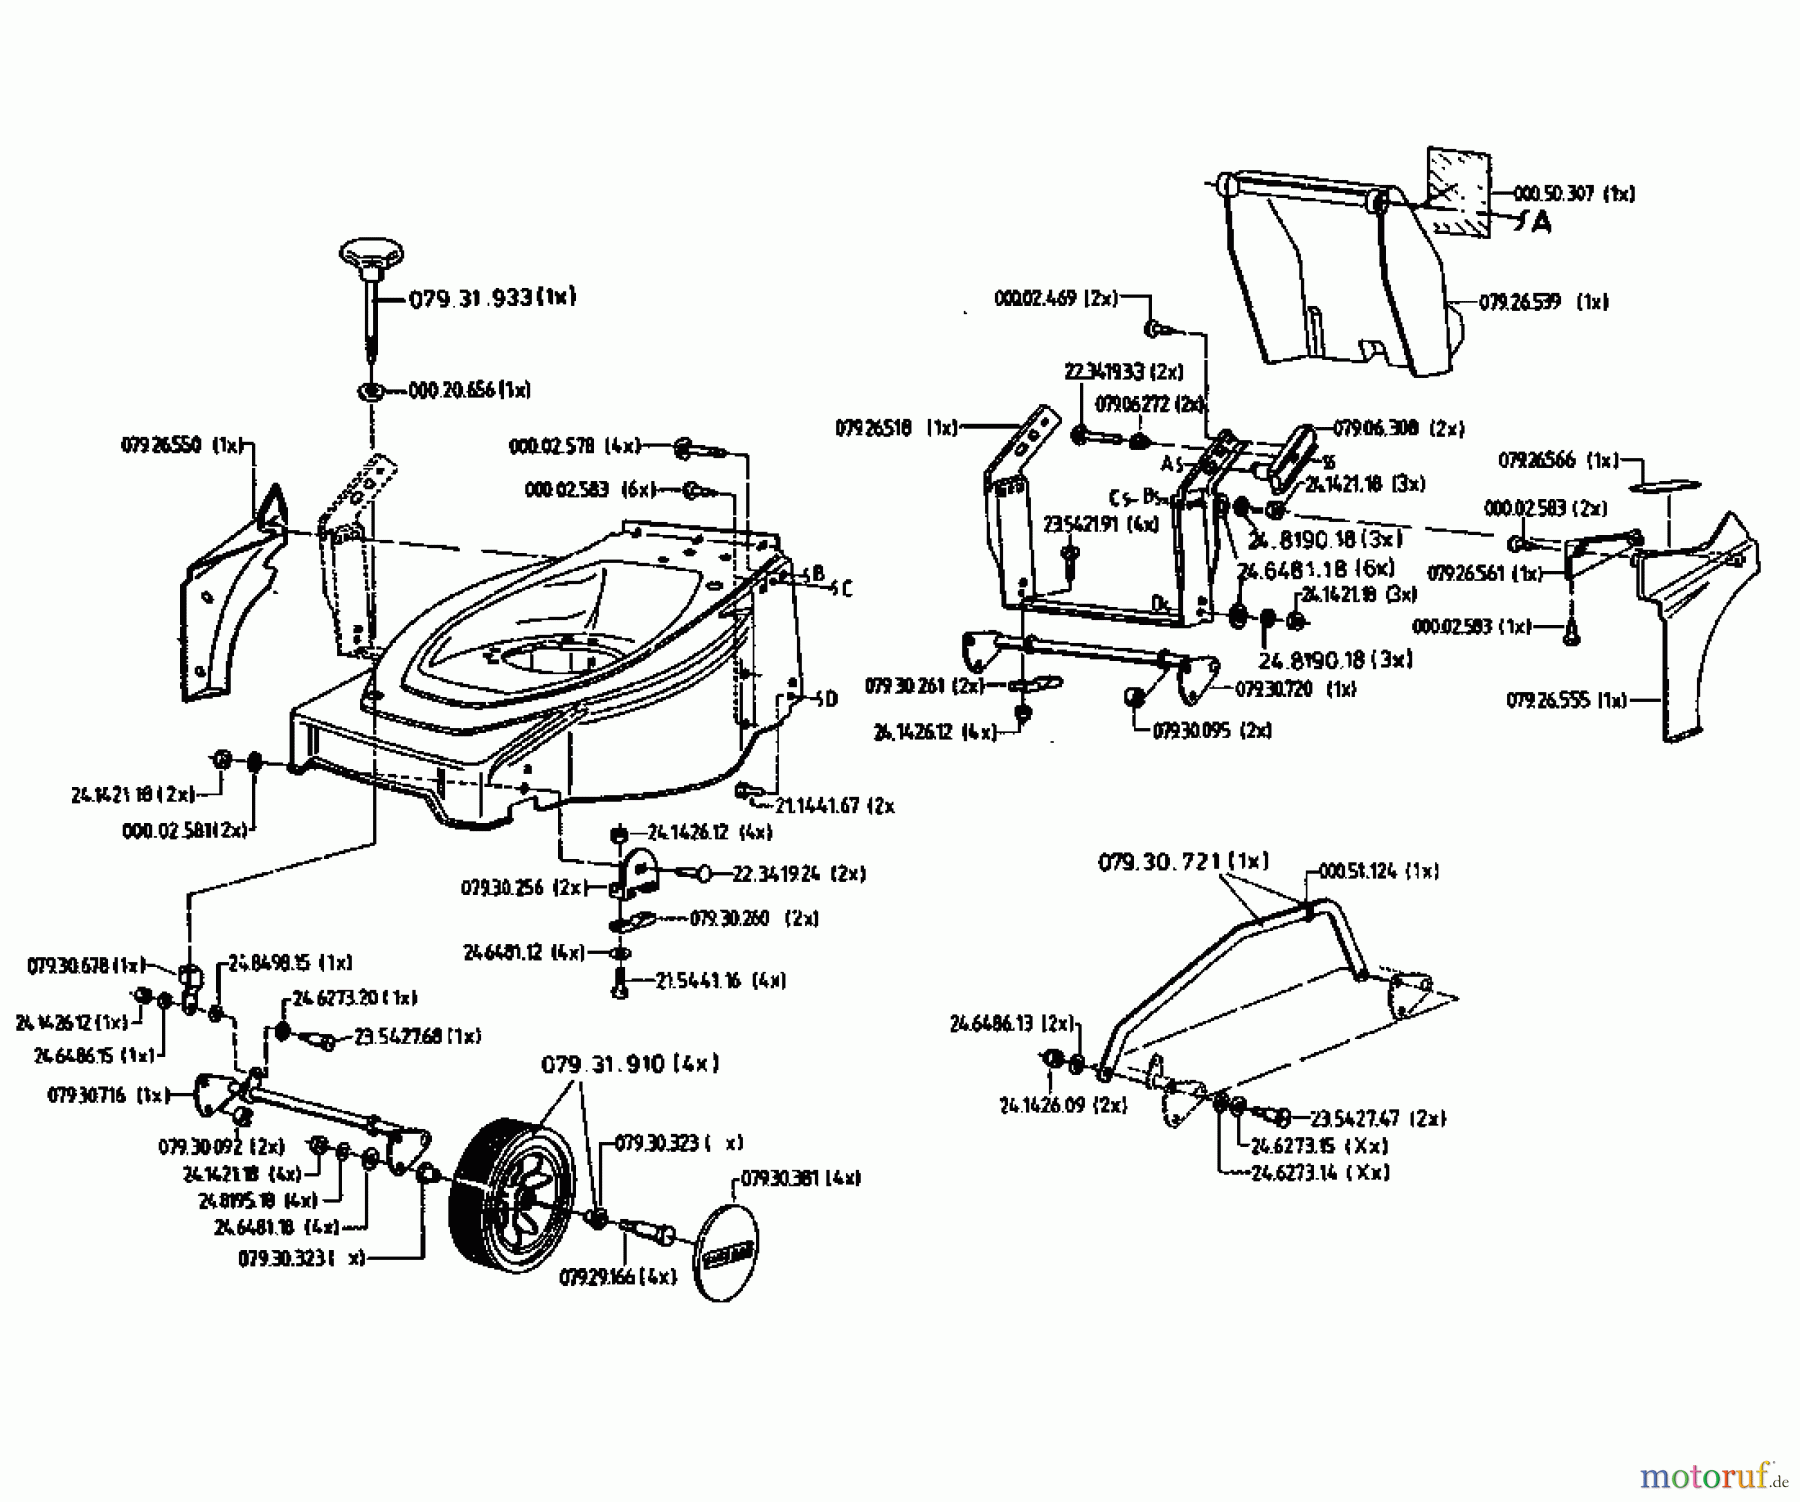  Gutbrod Tondeuse thermique HB 42 LE 04028.03  (1996) Machine de base